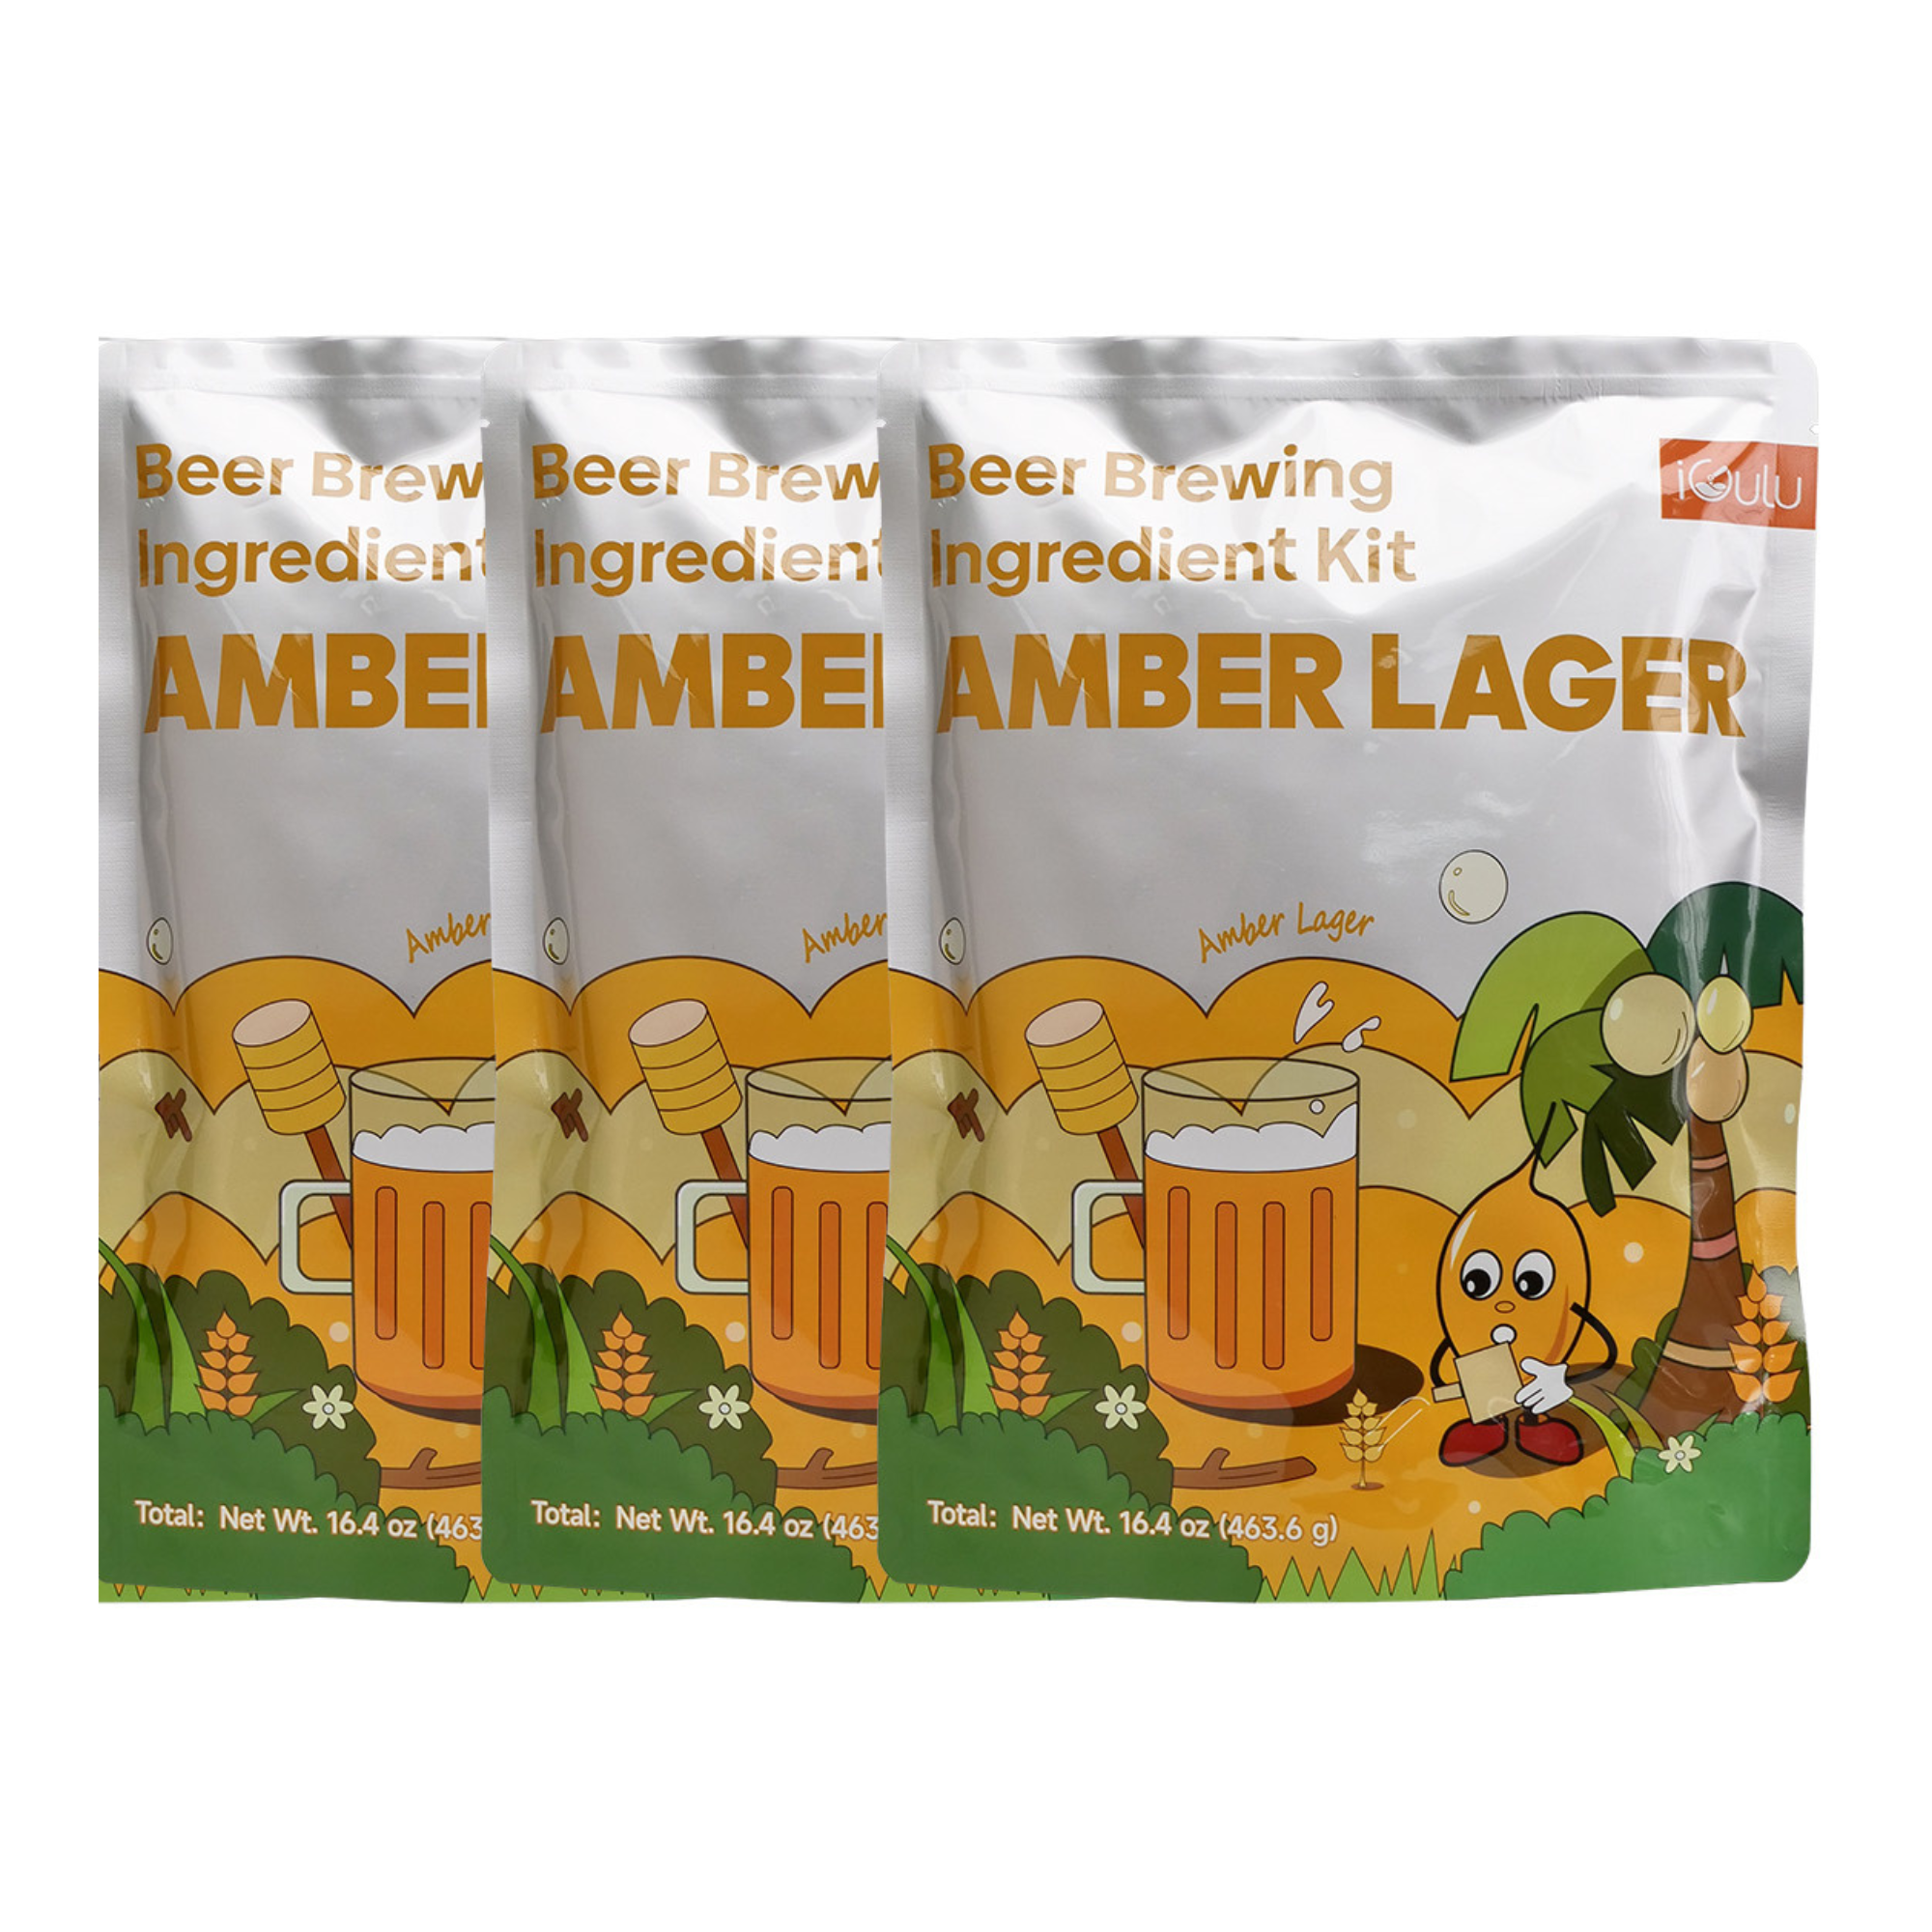 Amber Lager Beer Brewing Ingredient Kit